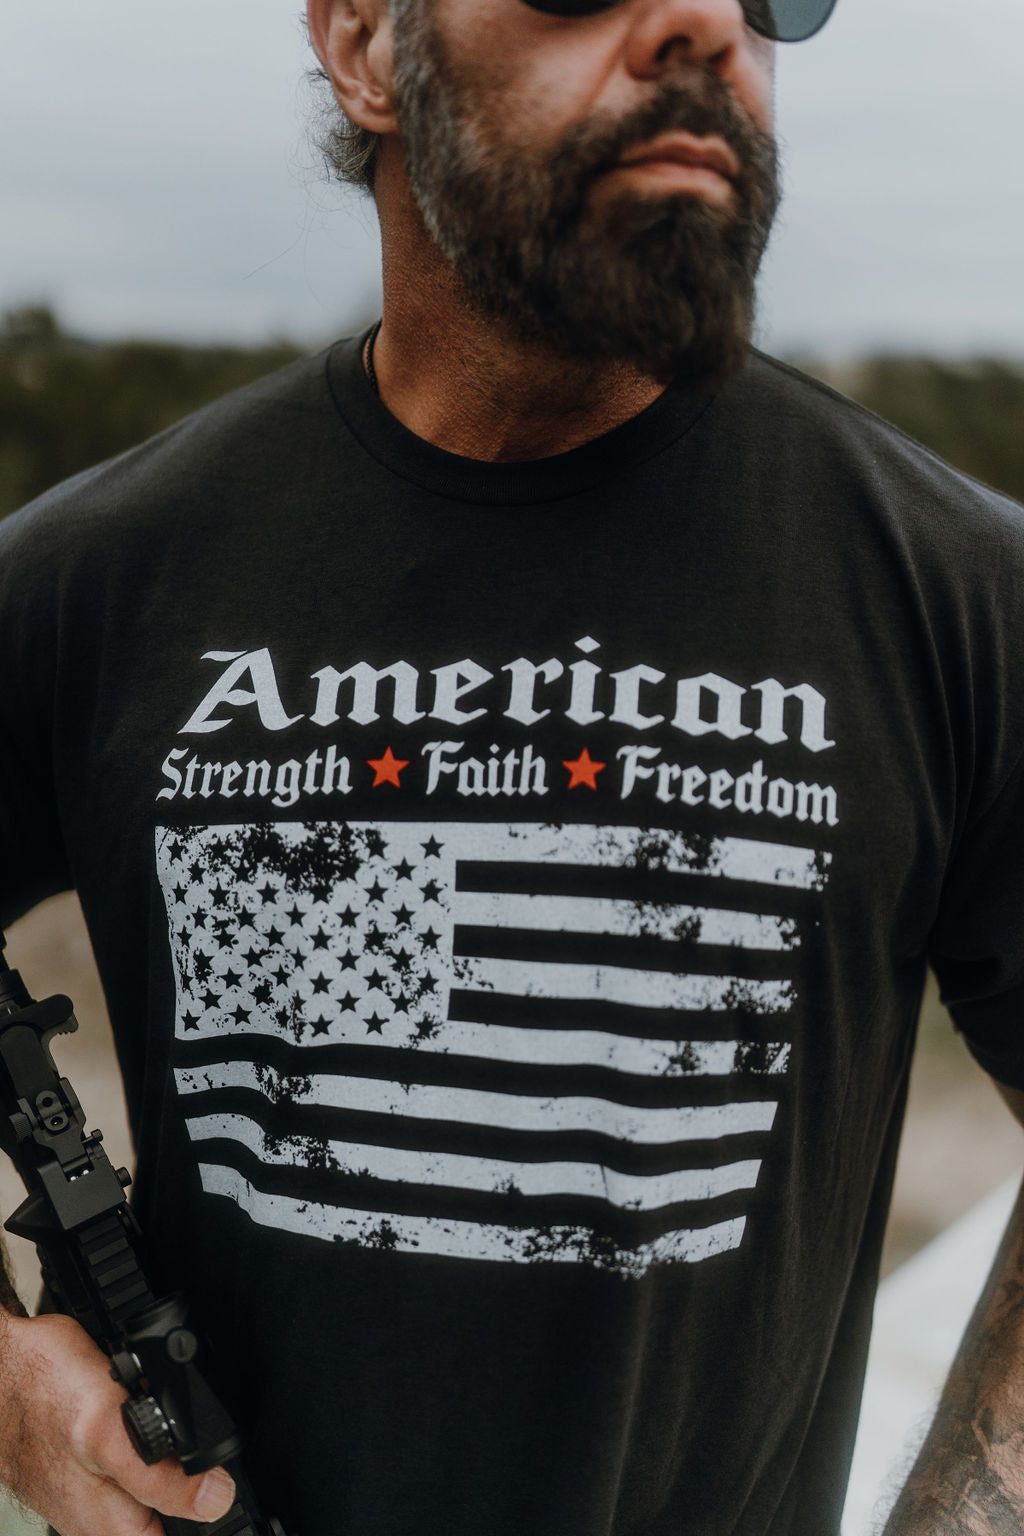 Strength, Faith, Freedom' Tee